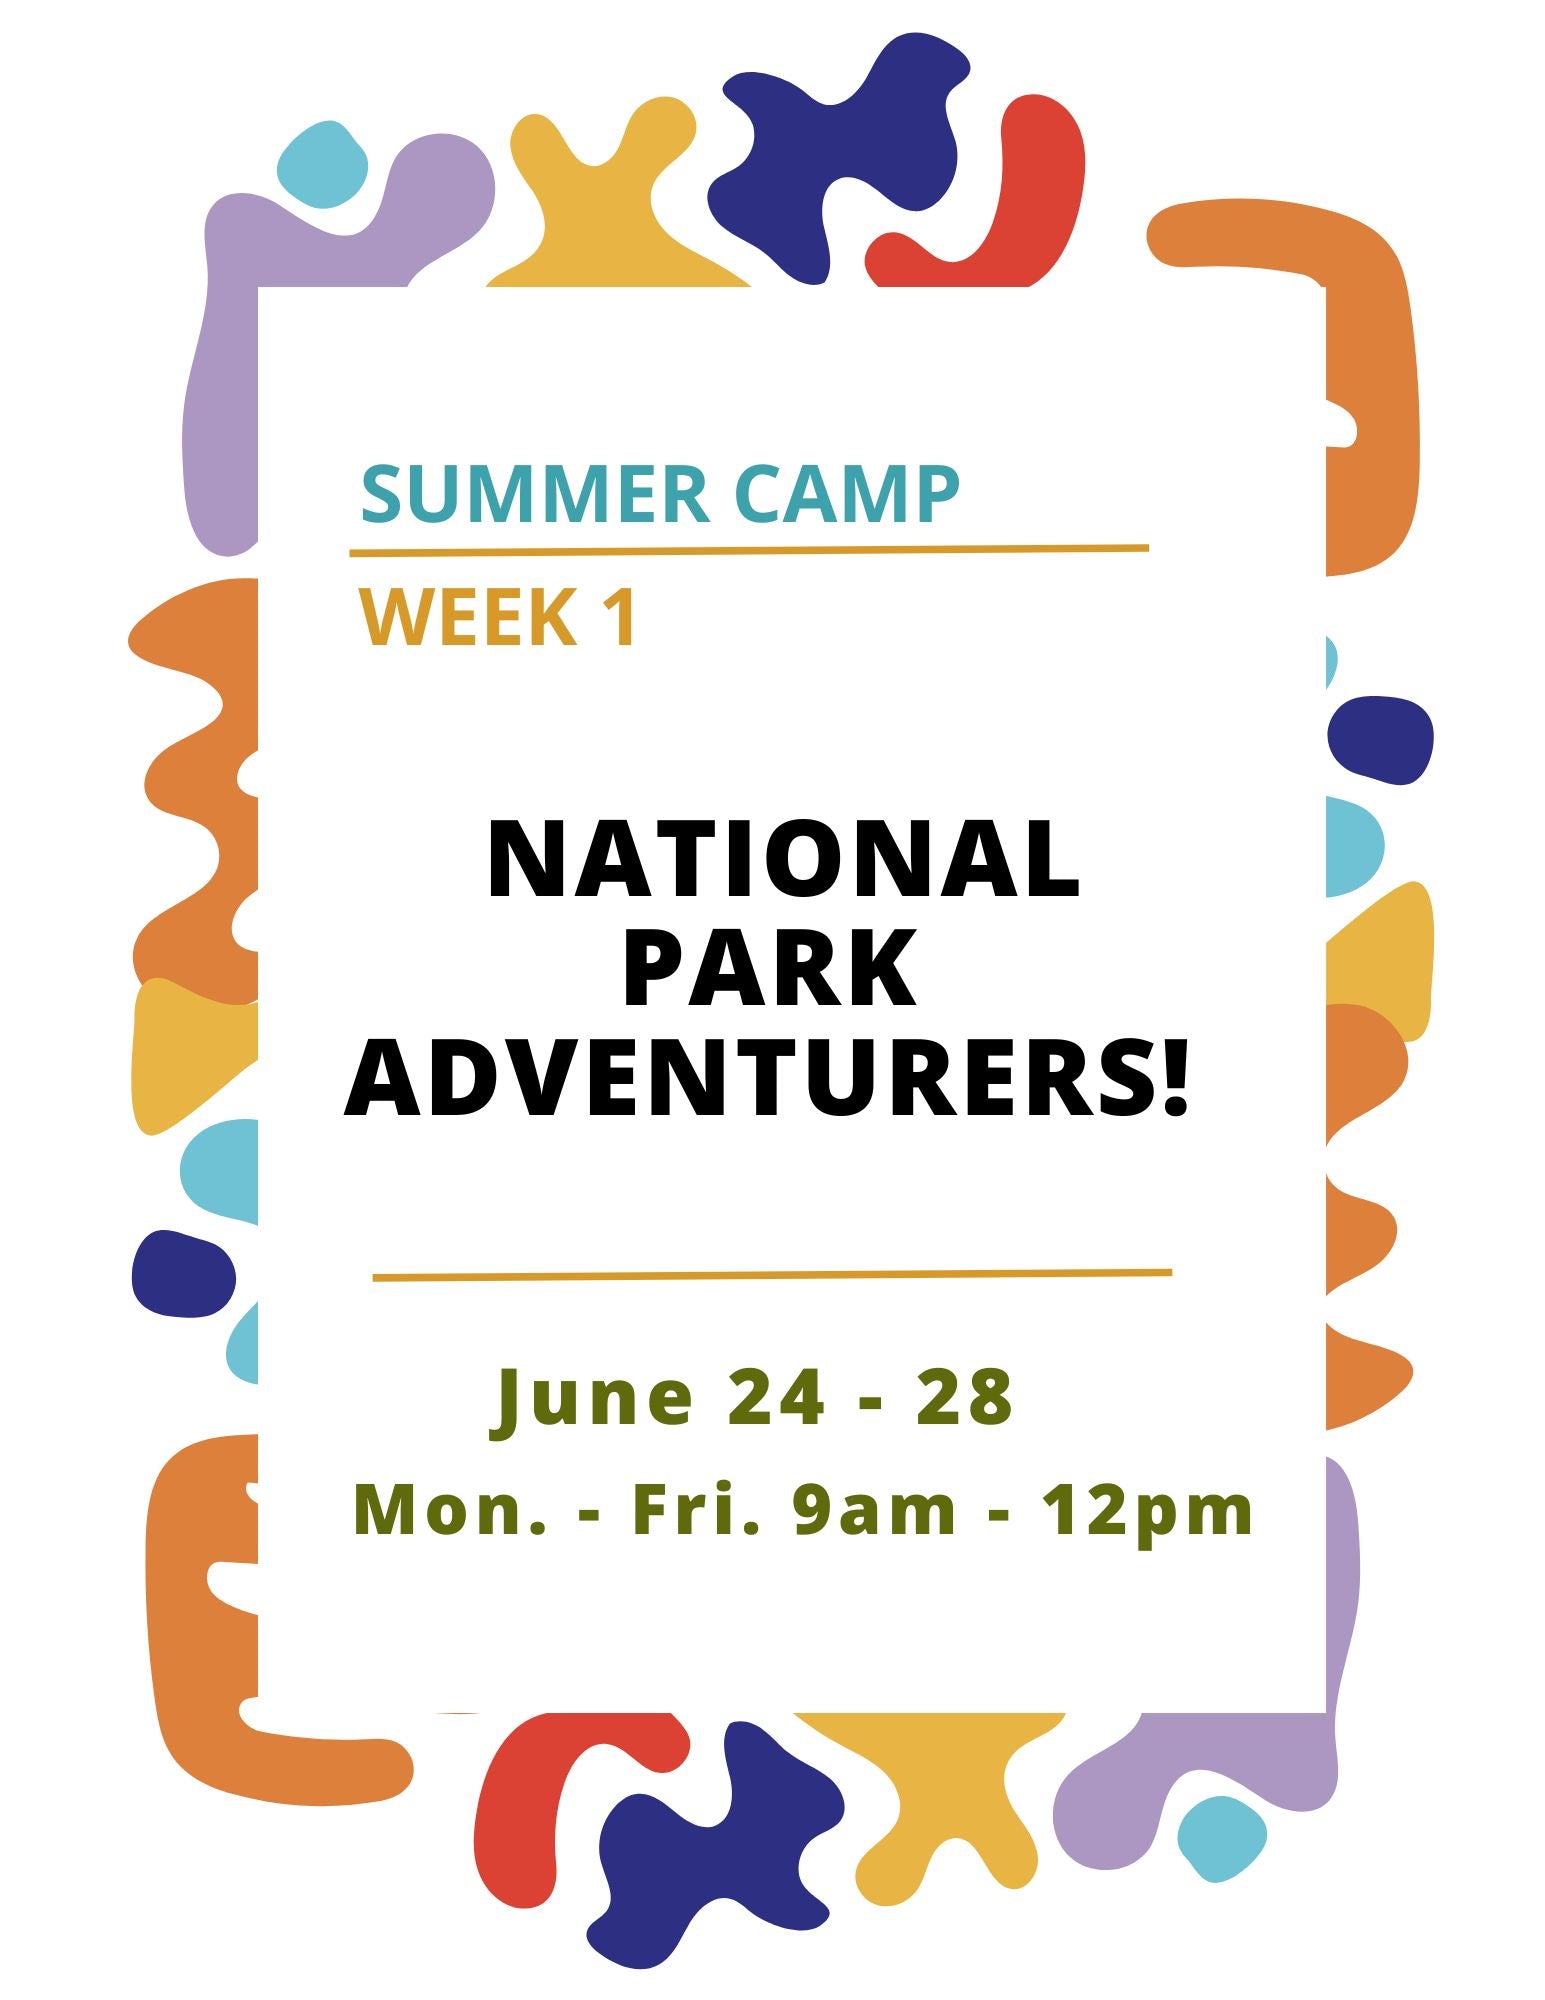 Summer Camp Week 1: National Park Adventurers!